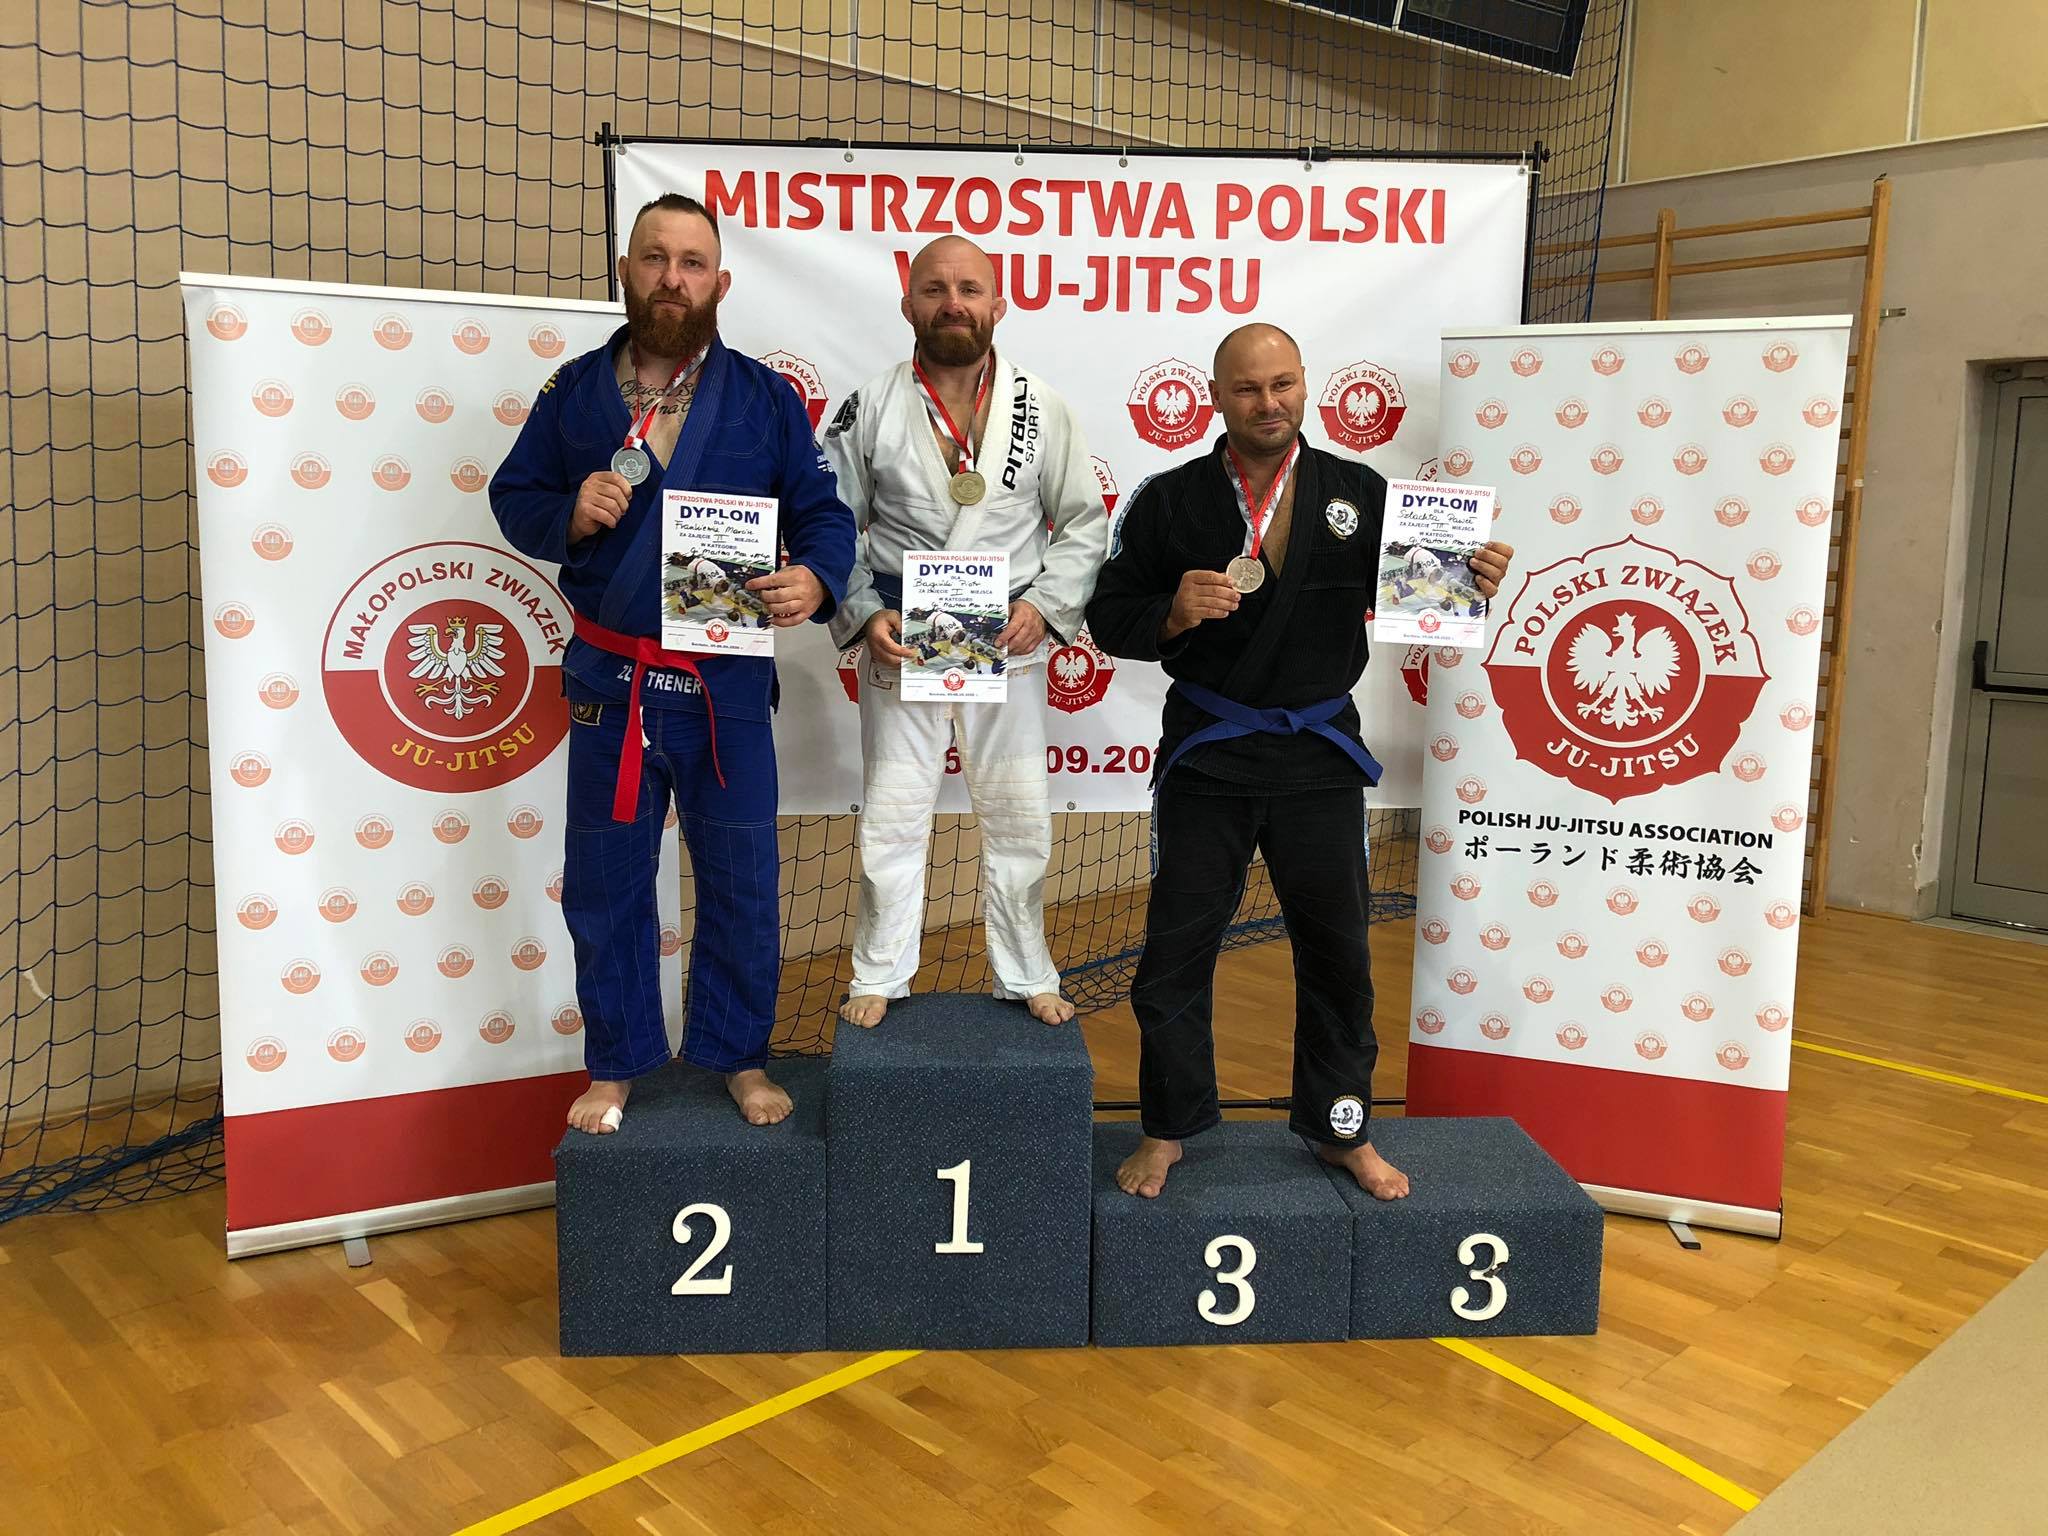 Grapplerzy na podium Mistrzostw Polski Jiu Jitsu